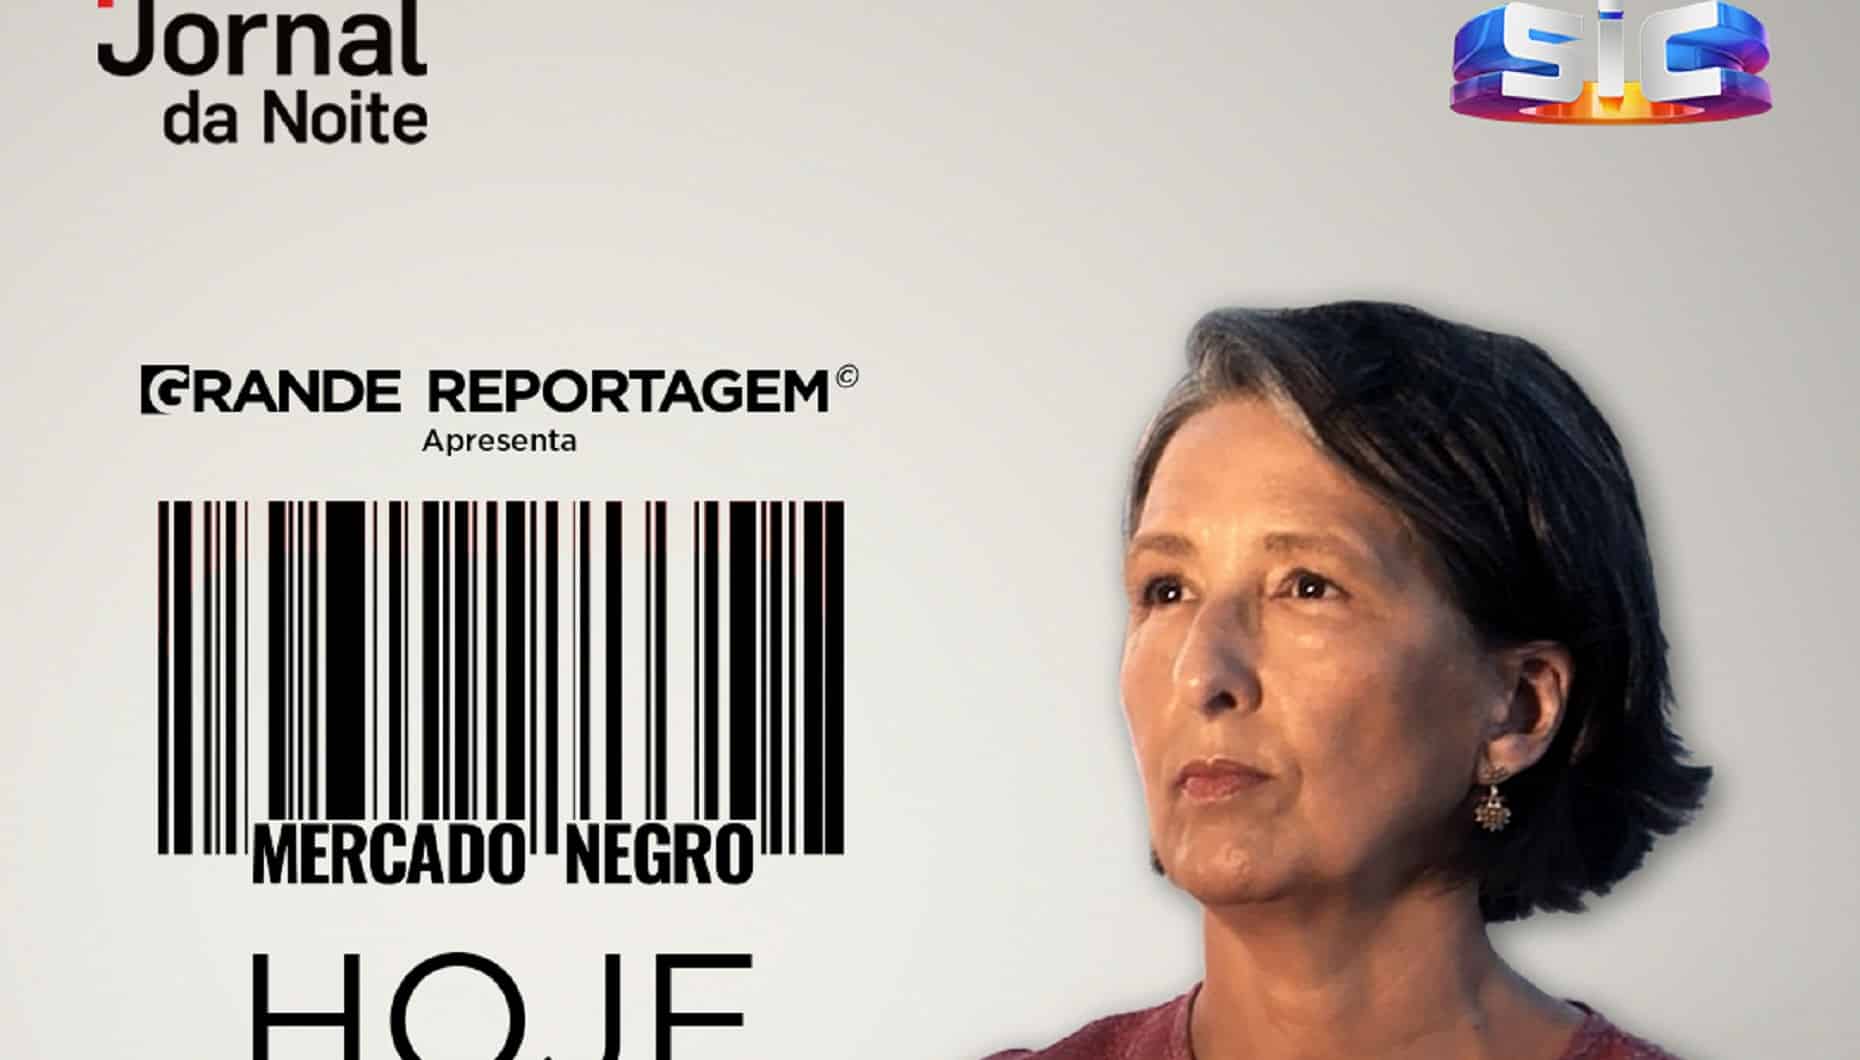 Sic, Grande Reportagem, Sofia Pinto Coelho, Mercado Negro